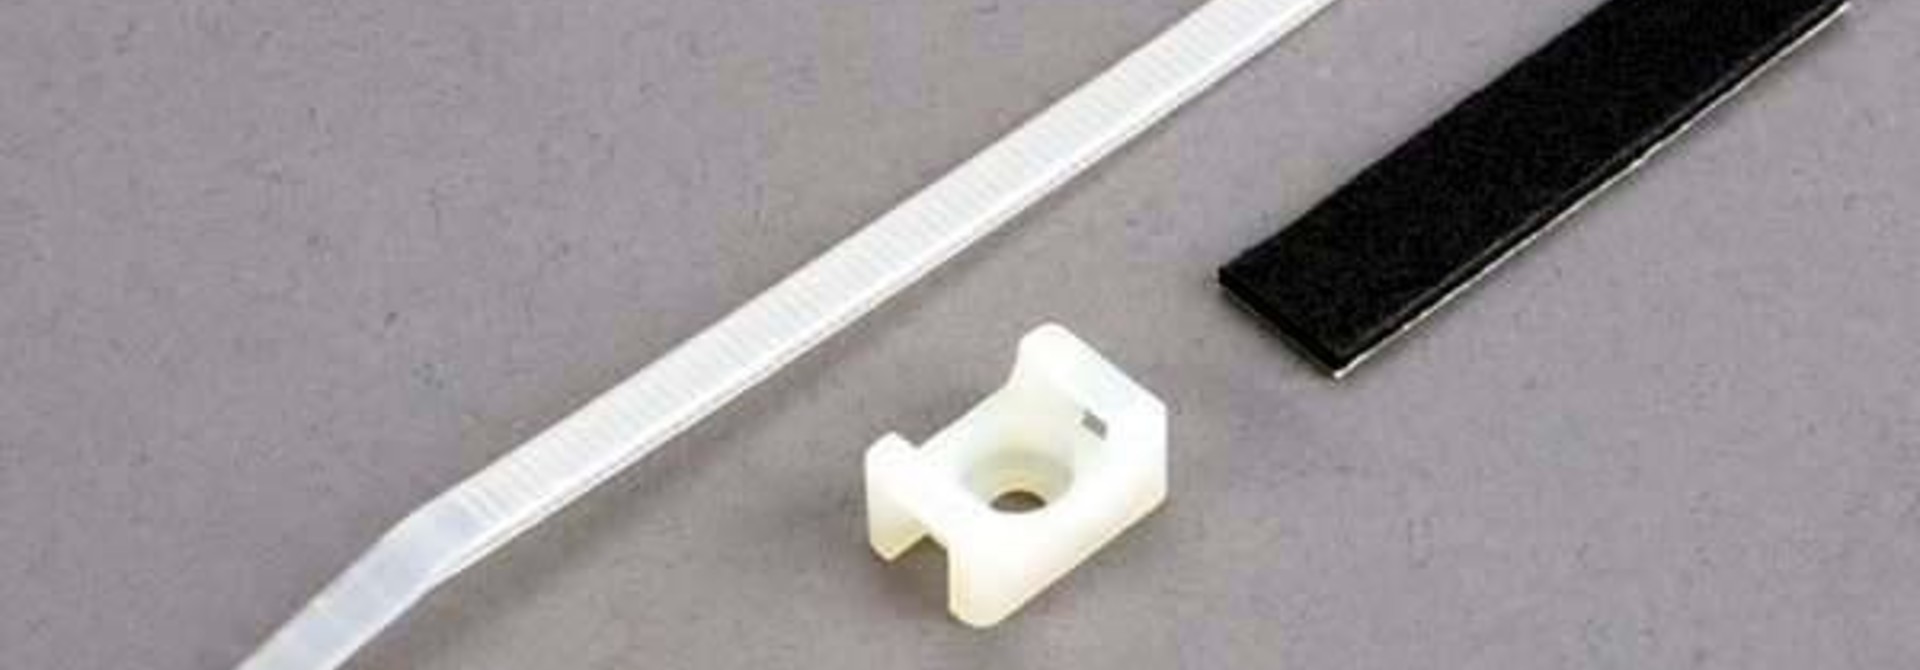 Attachment bracket, plug/ foam tape/tie wrap/ 3x10mm wst scr, TRX4577